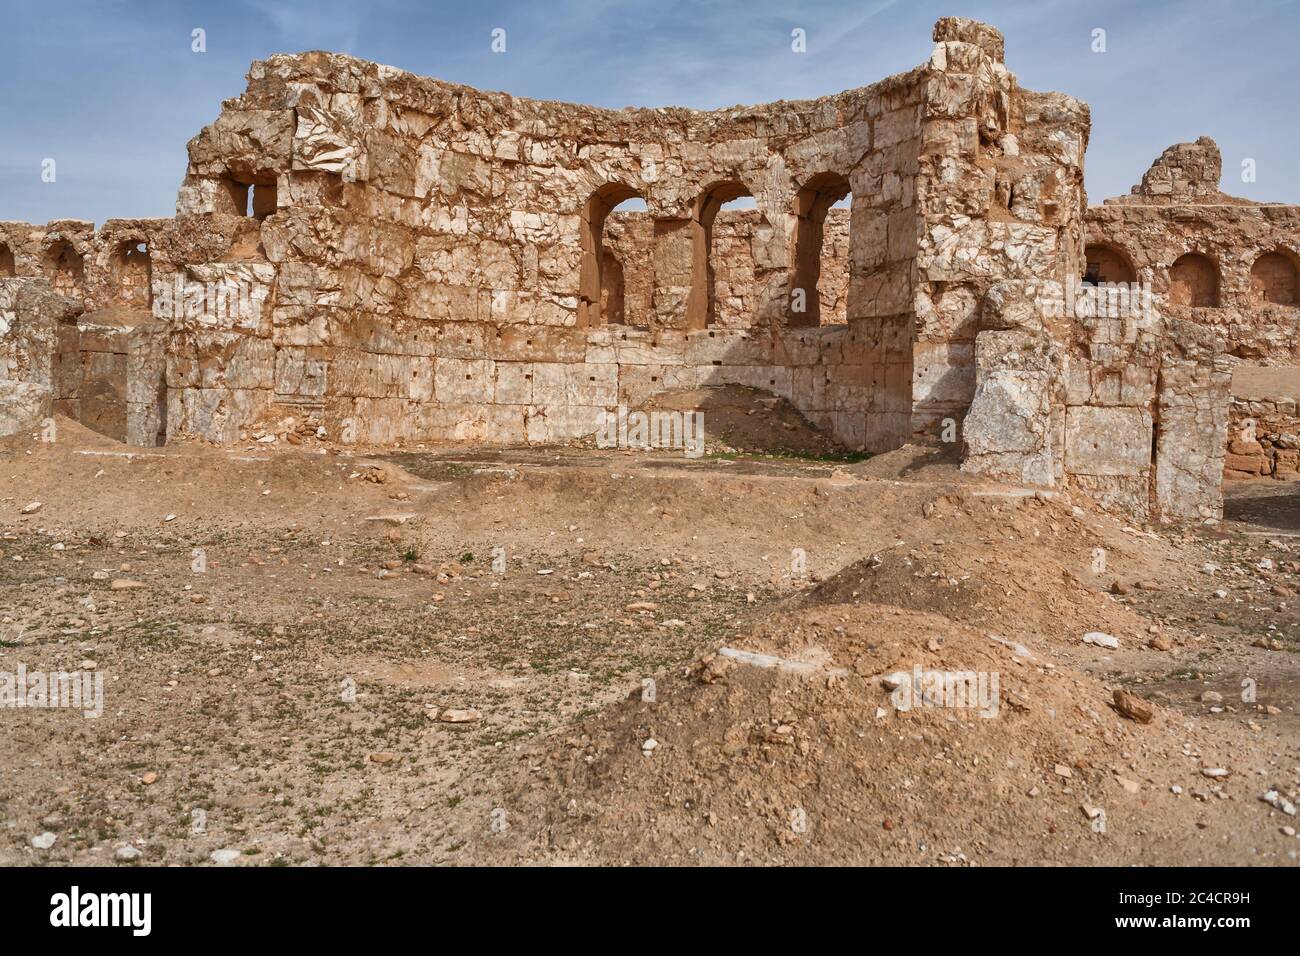 Resafa, Sergiopolis, vicino ad Ar Raqqah, città romana e bizantina nel deserto, Siria Foto Stock